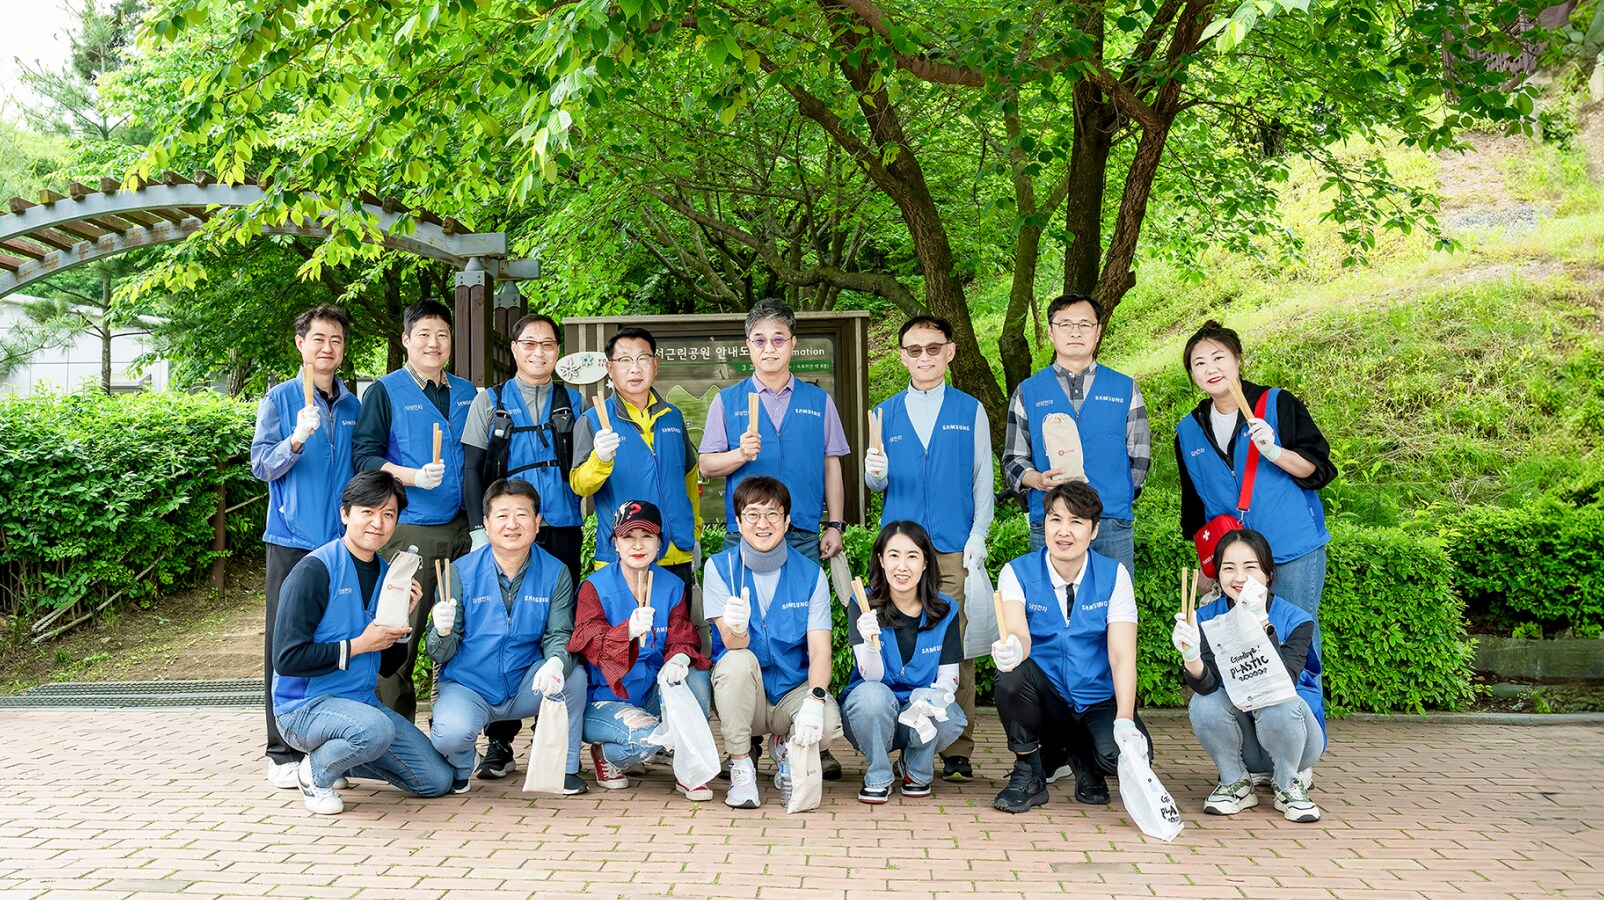 매미산 둘레길 환경 정화 활동에 참여하는 용인 소통협의회 위원들의 모습